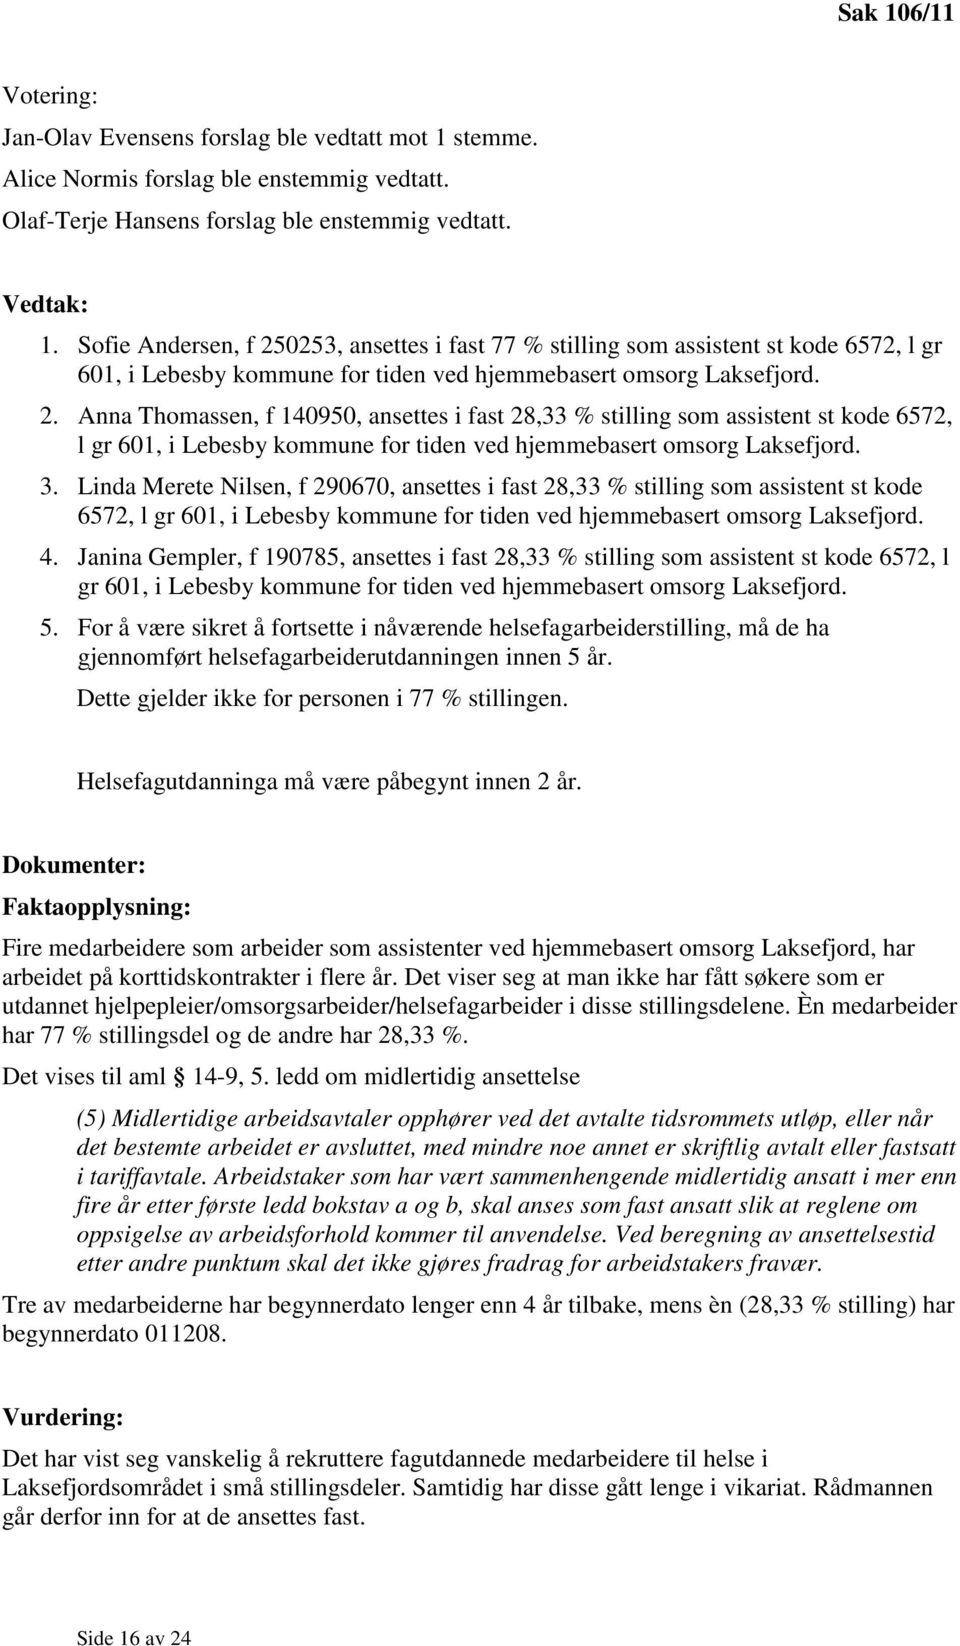 3. Linda Merete Nilsen, f 290670, ansettes i fast 28,33 % stilling som assistent st kode 6572, l gr 601, i Lebesby kommune for tiden ved hjemmebasert omsorg Laksefjord. 4.